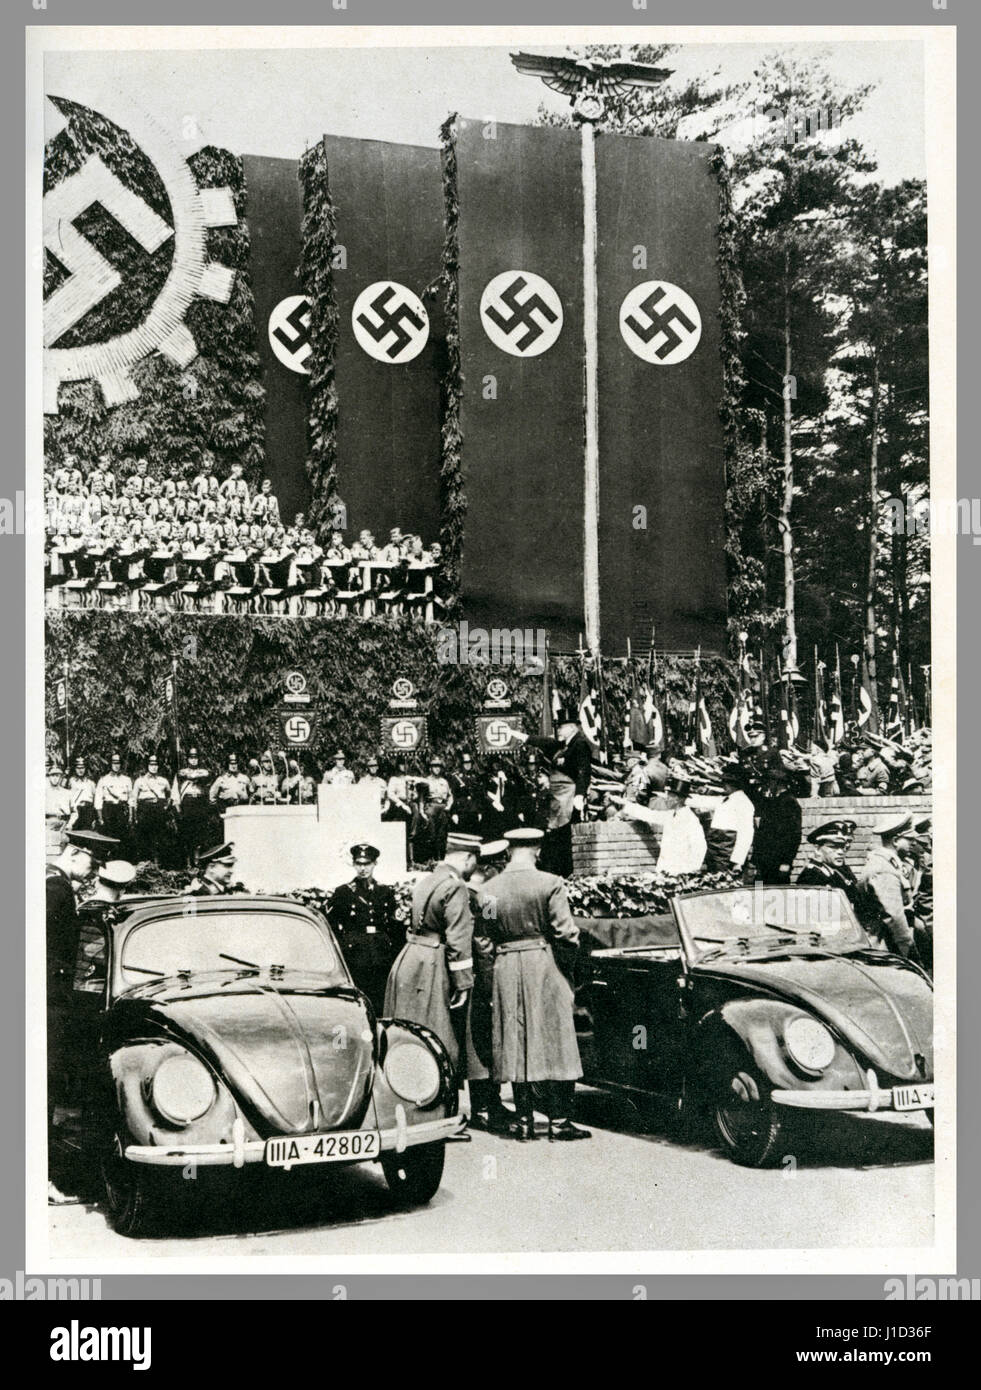 KdF -Wagen Volkswagen Startet Propagandabild Deutschland am 26. Mai 1938 Grundsteinlegung im Volkswagenwerk Fallersleben Wolfsburg mit neuen KdF -Wagen (Kraft durch Freude) unter nazistischen Swastika-Flaggen Stockfoto